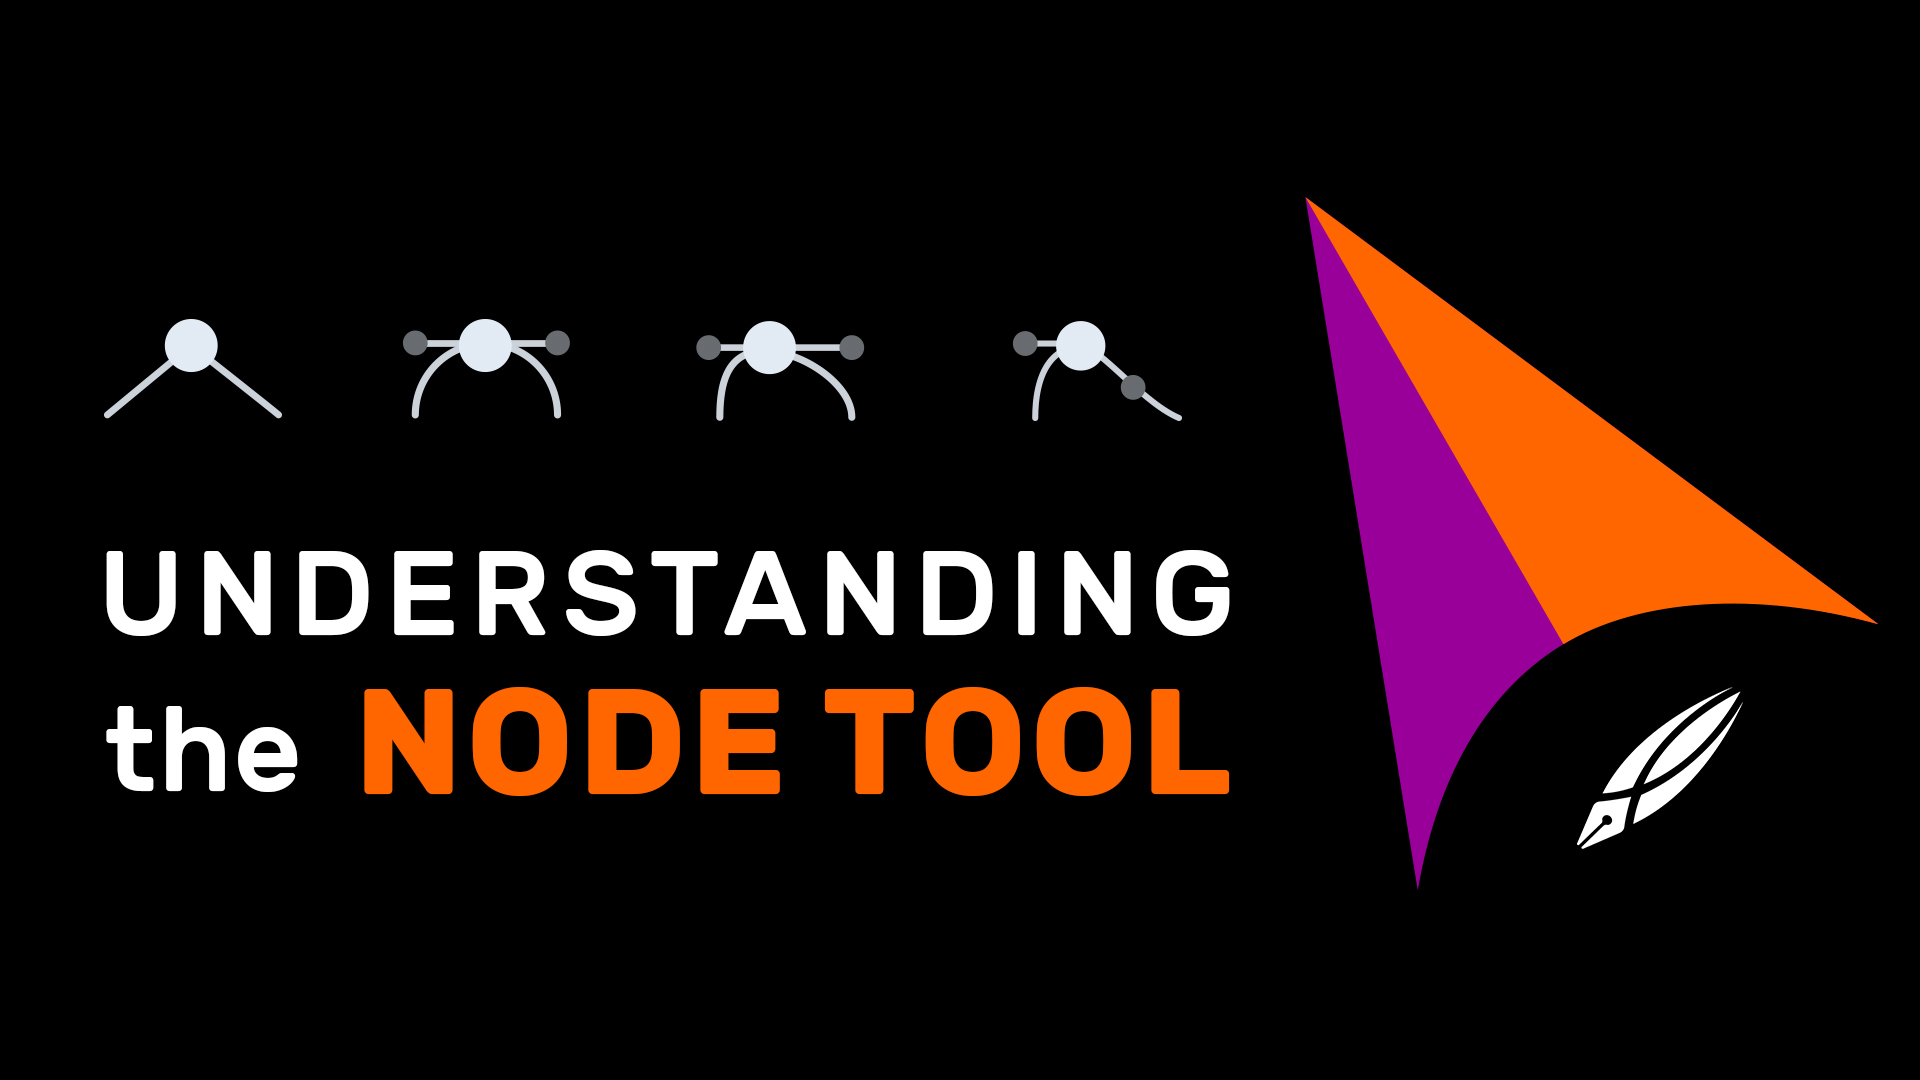 Vectornator Tutorial Understanding the Node tool